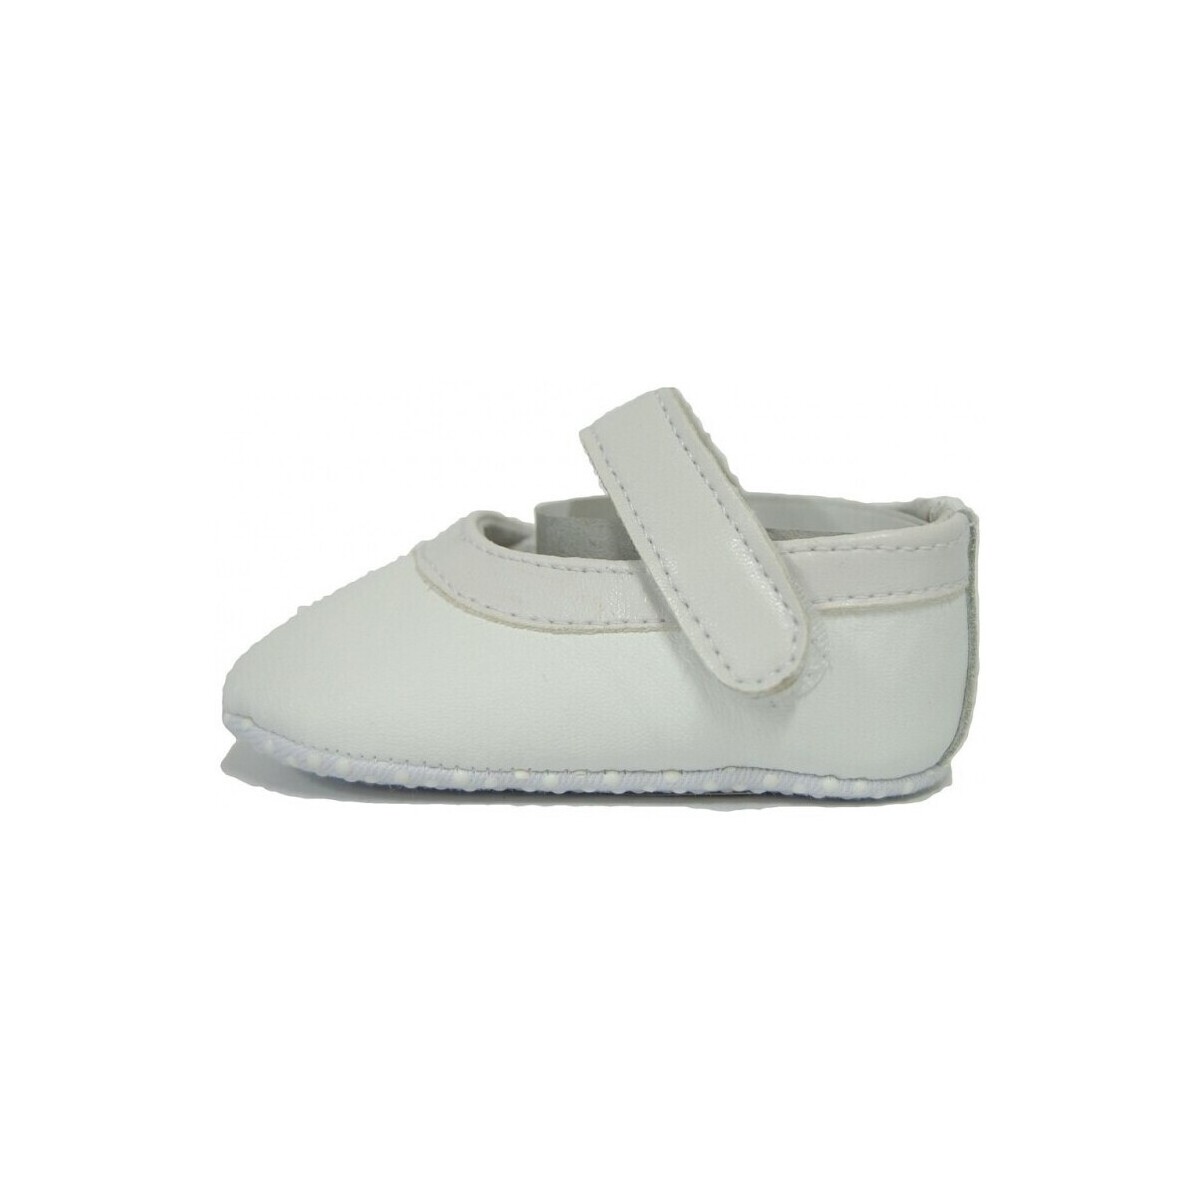 Παπούτσια Αγόρι Σοσονάκια μωρού Colores 9181-15 Άσπρο